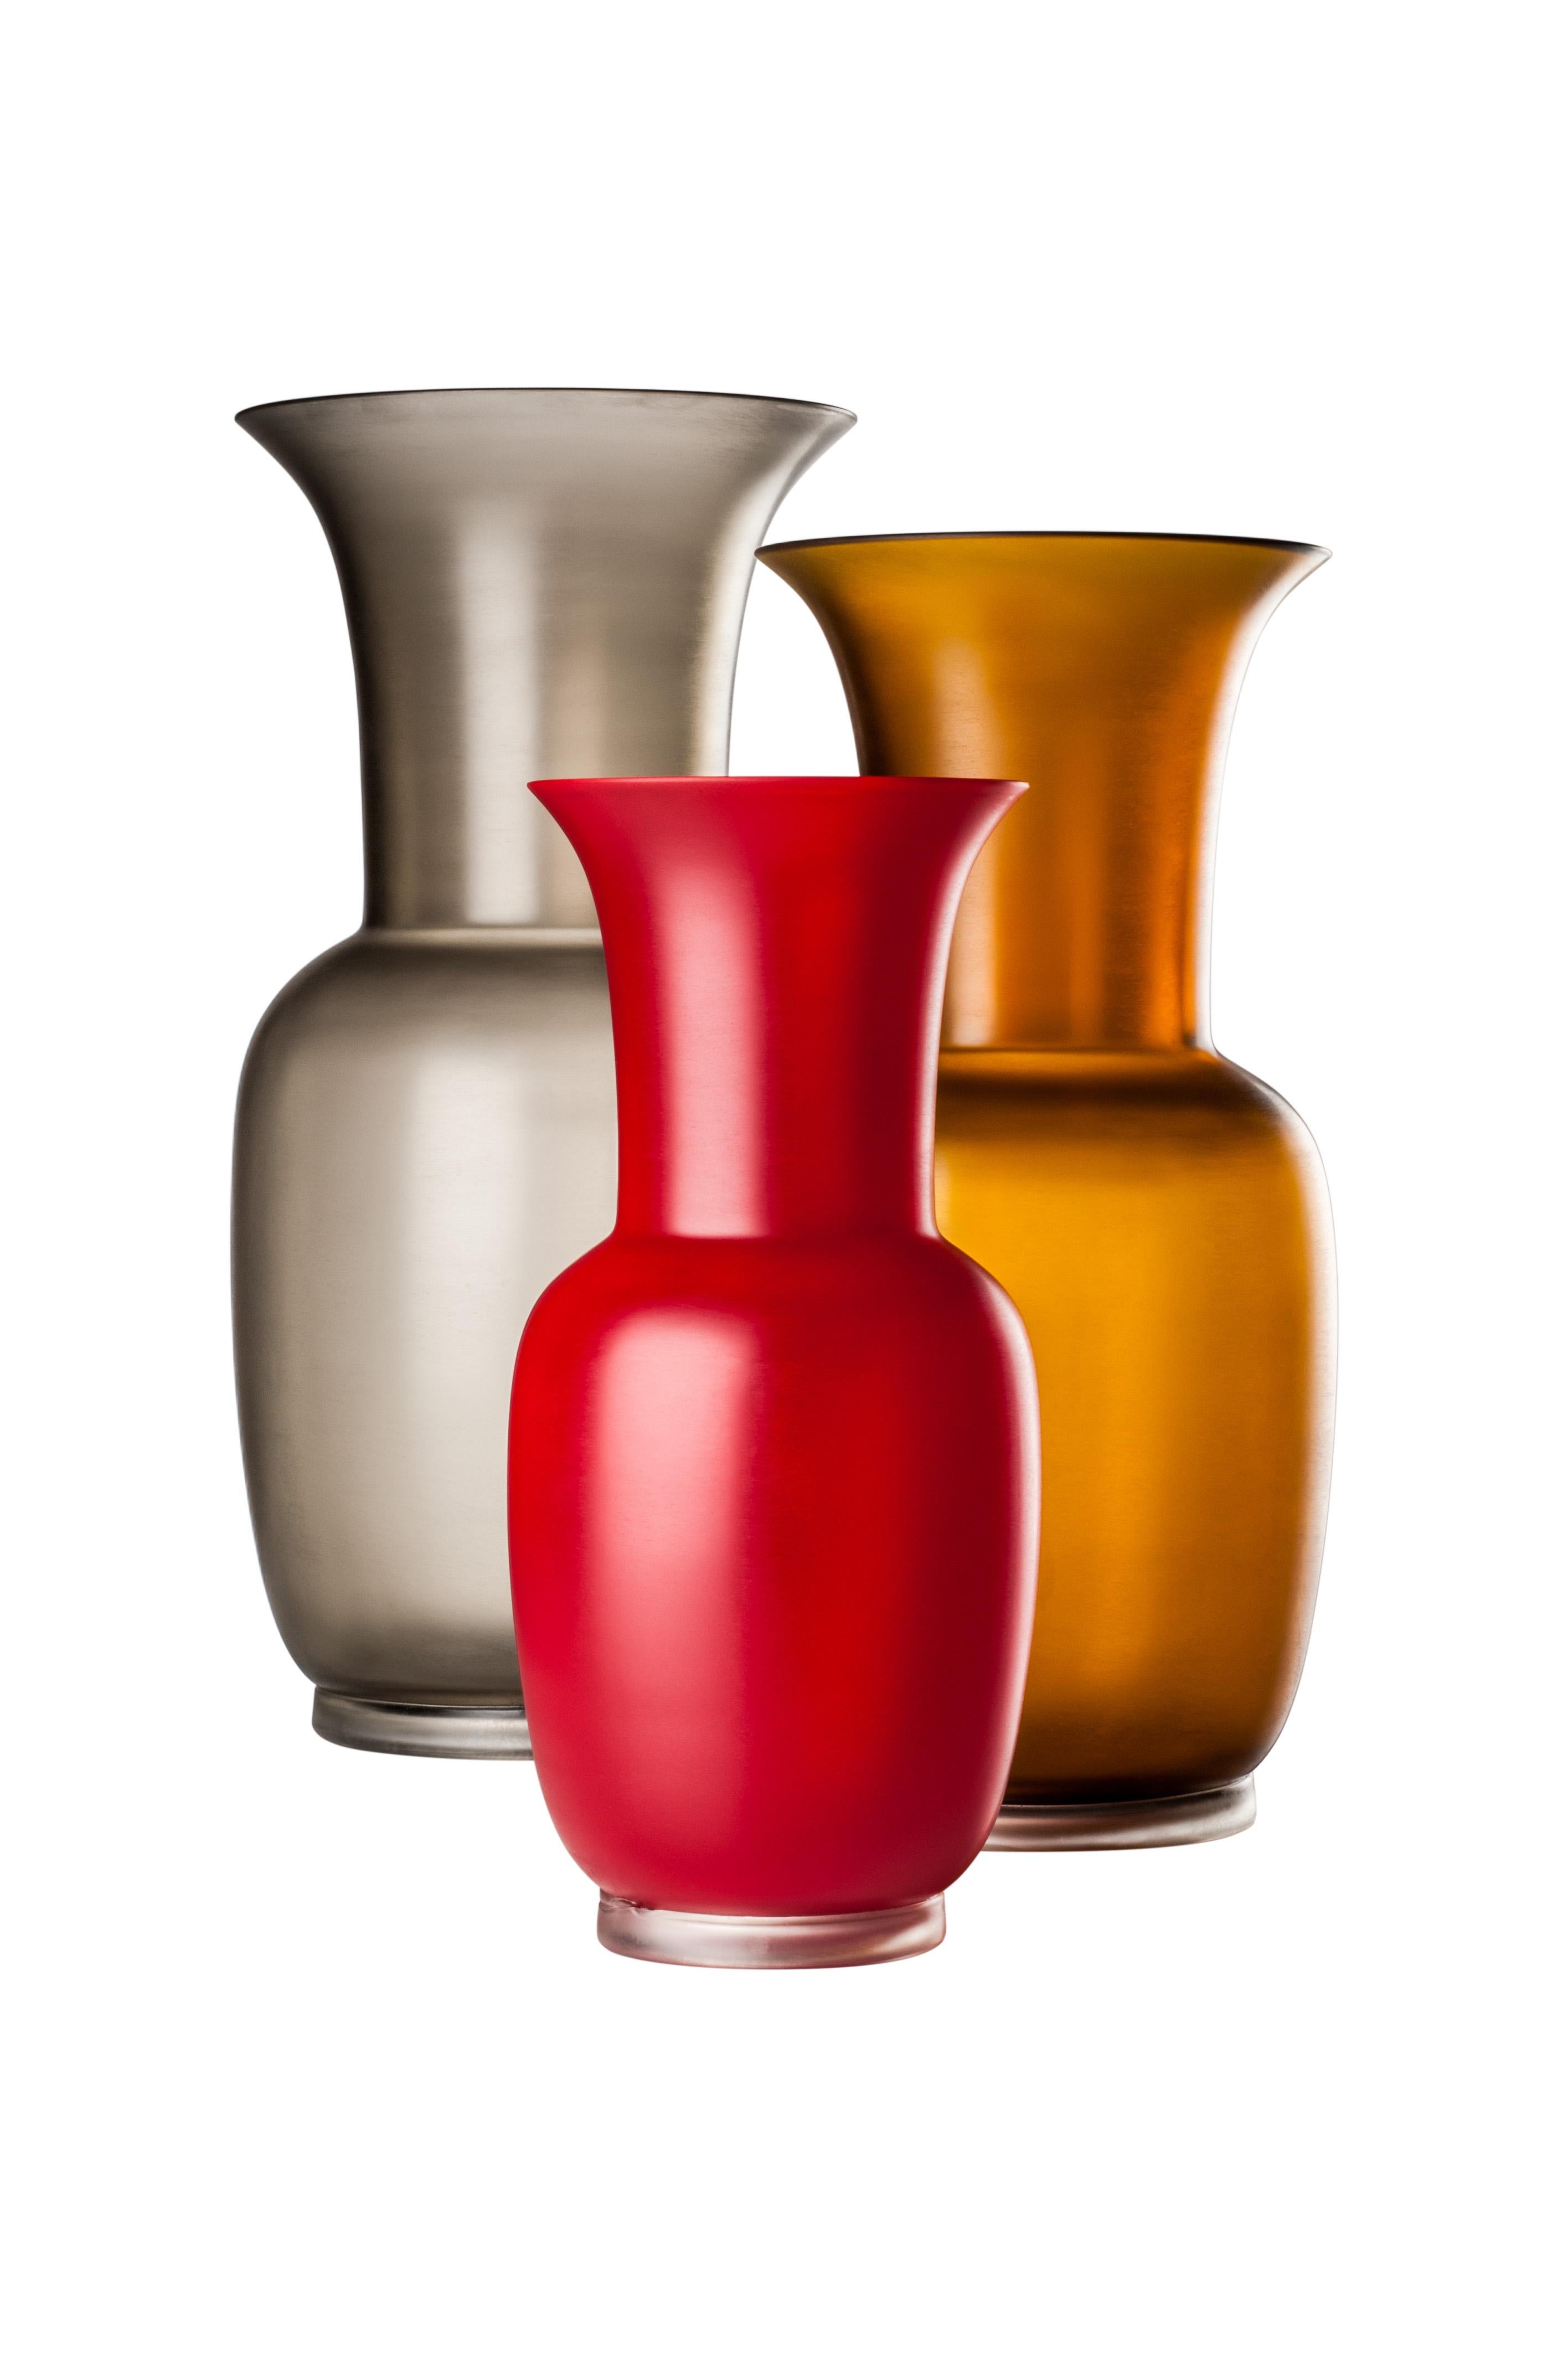 Die von Venini entworfene und hergestellte Vase aus satiniertem Glas hat die gleiche Form wie die ikonische Opalino-Vase und ist mit einer matten Oberfläche versehen.
Nur für den Innenbereich.

Abmessungen: Ø 17 cm, H 36 cm.
    